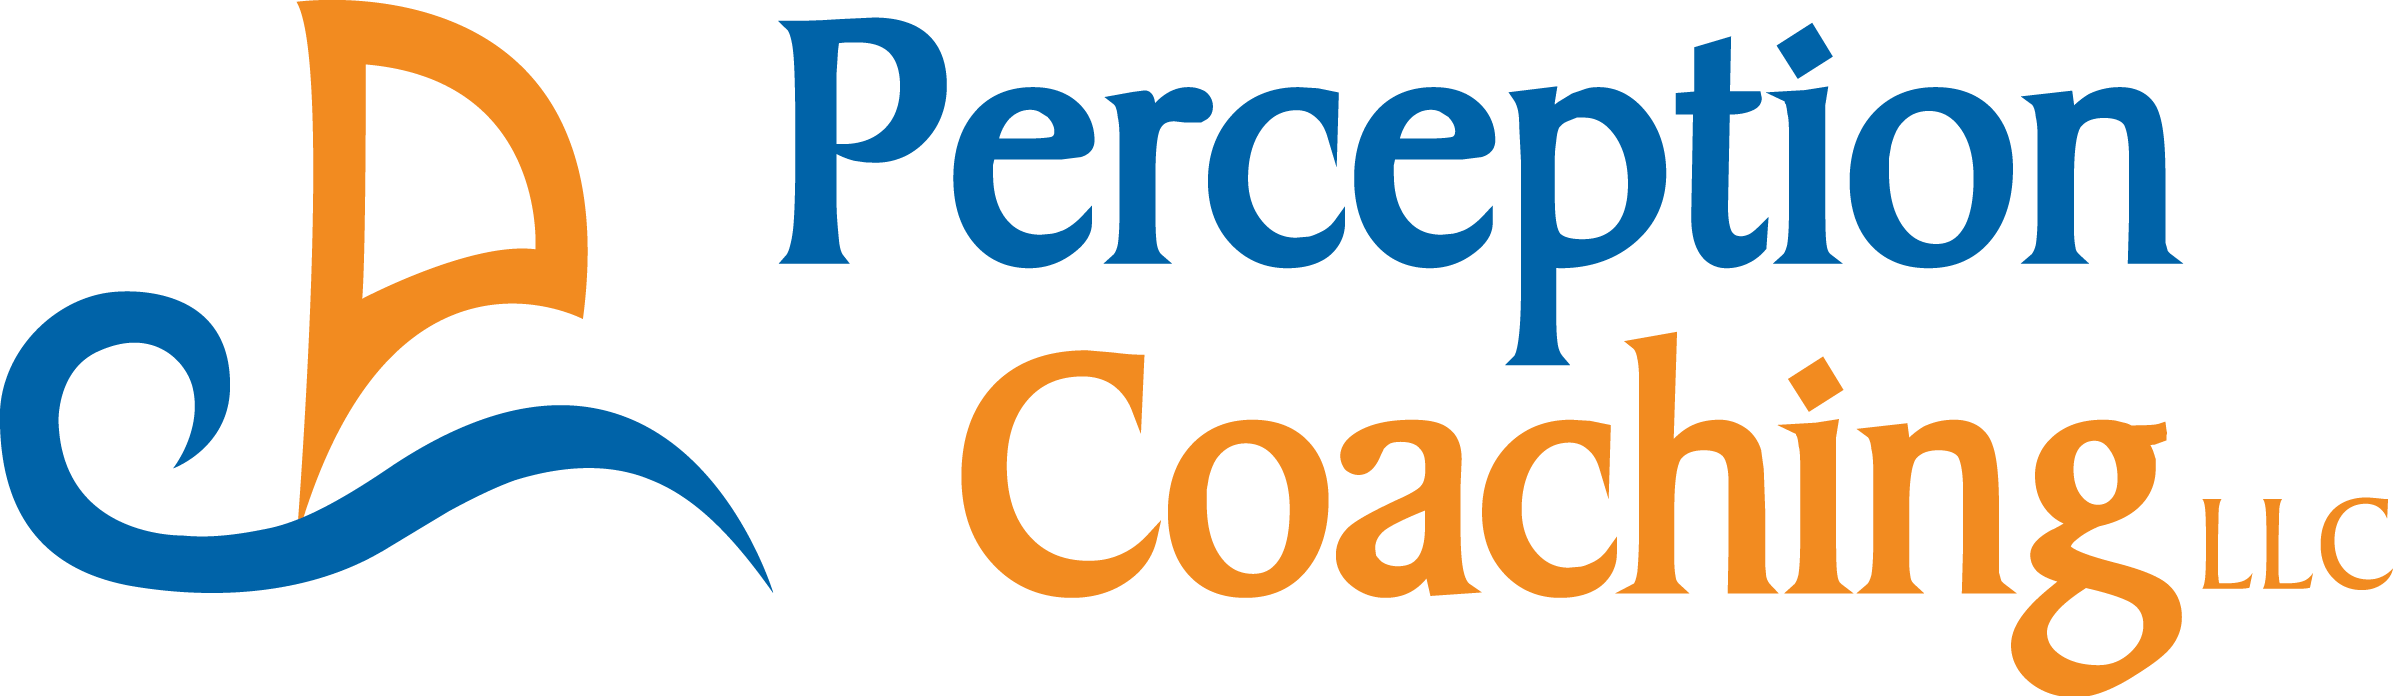 Perception Coaching